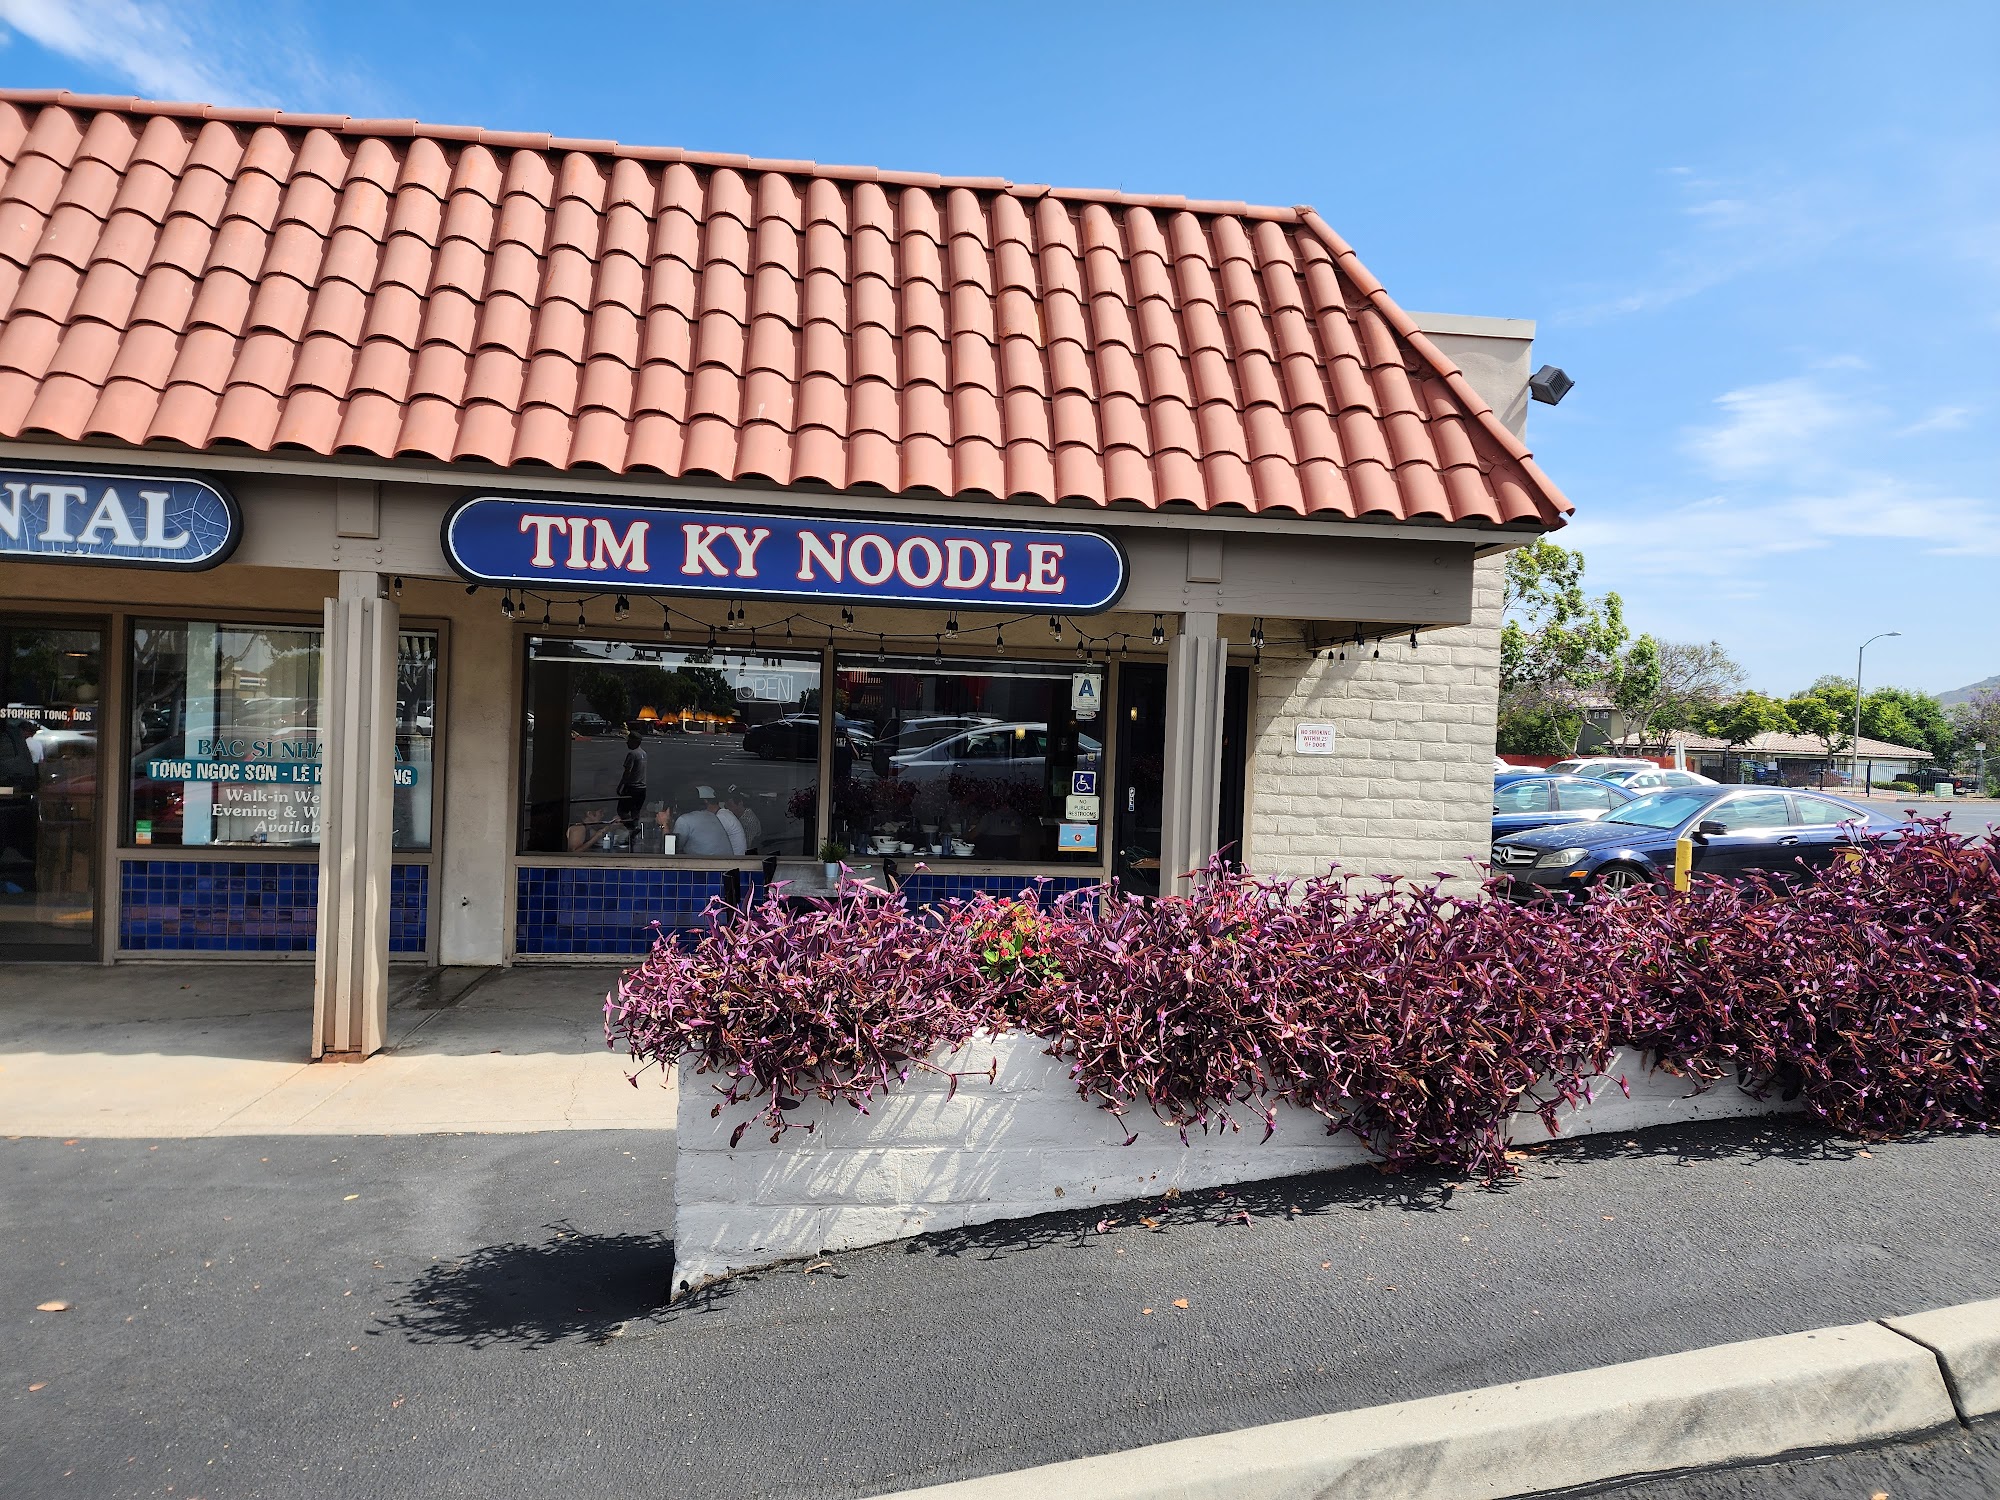 Tim Ky Noodle